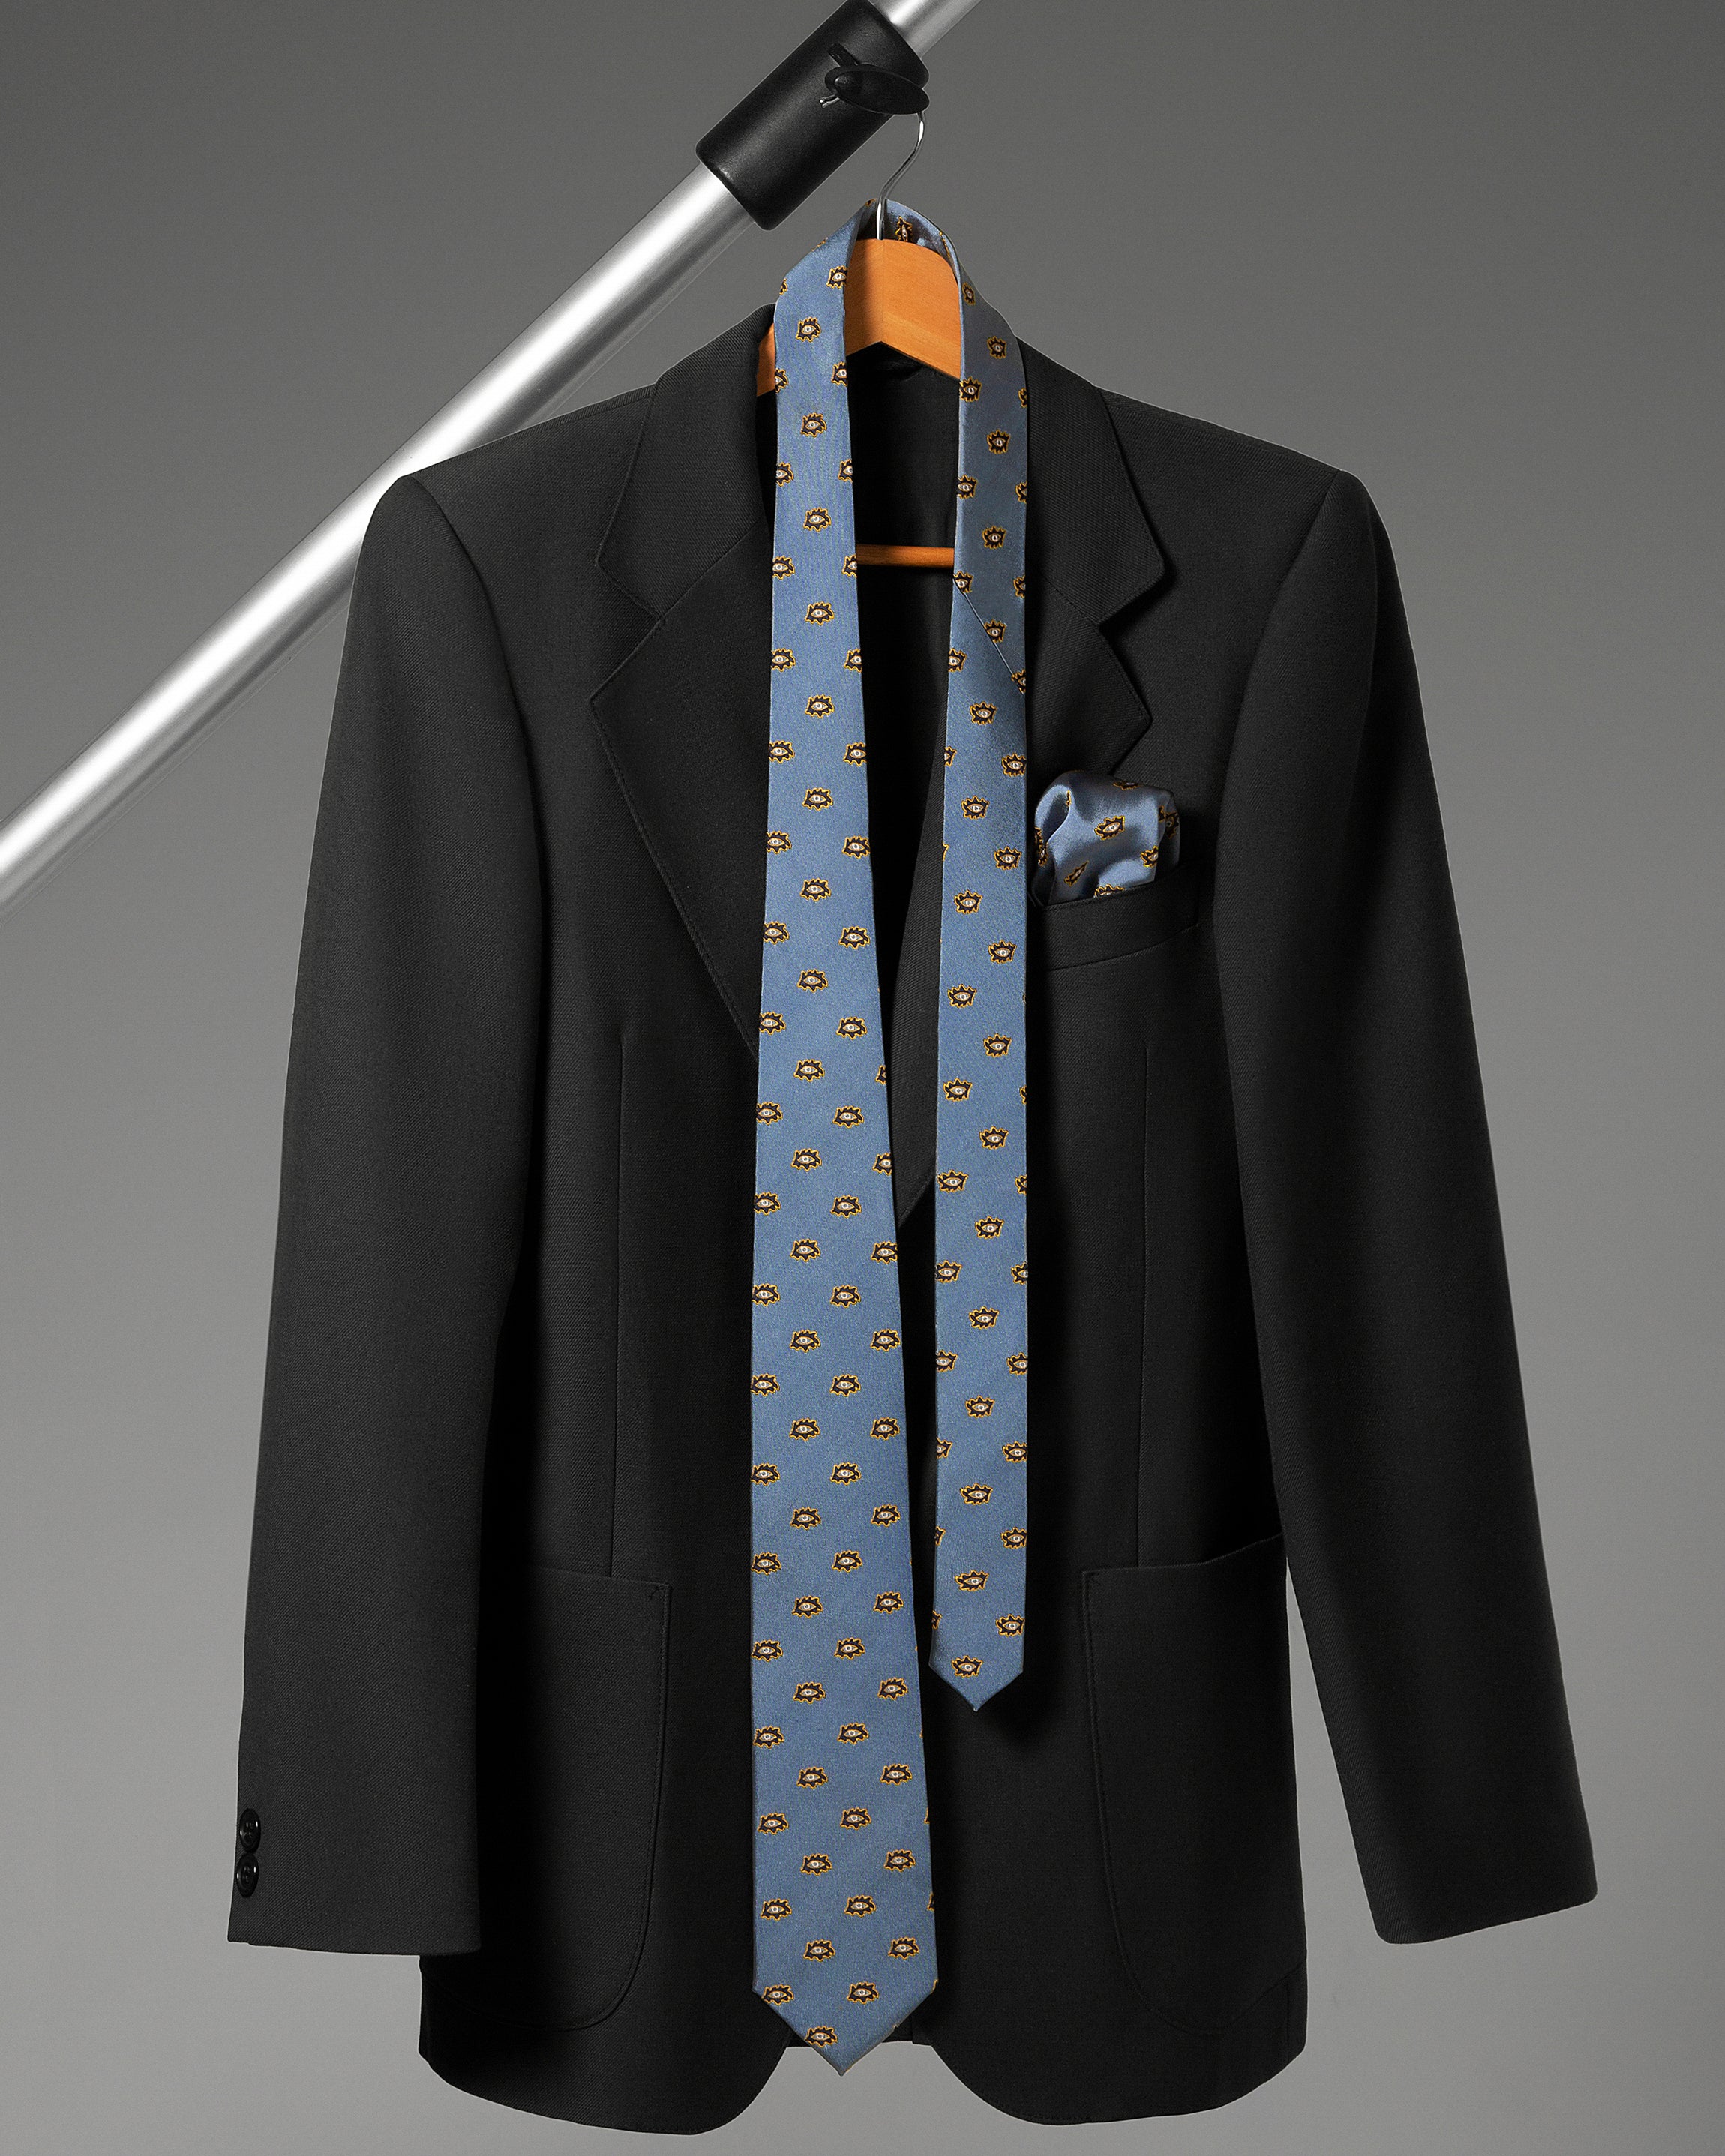 აბრეშუმიჟაკარდის ჰალსტუხის და საგულის სეტი „თოლიგე“ (ცისფერი)